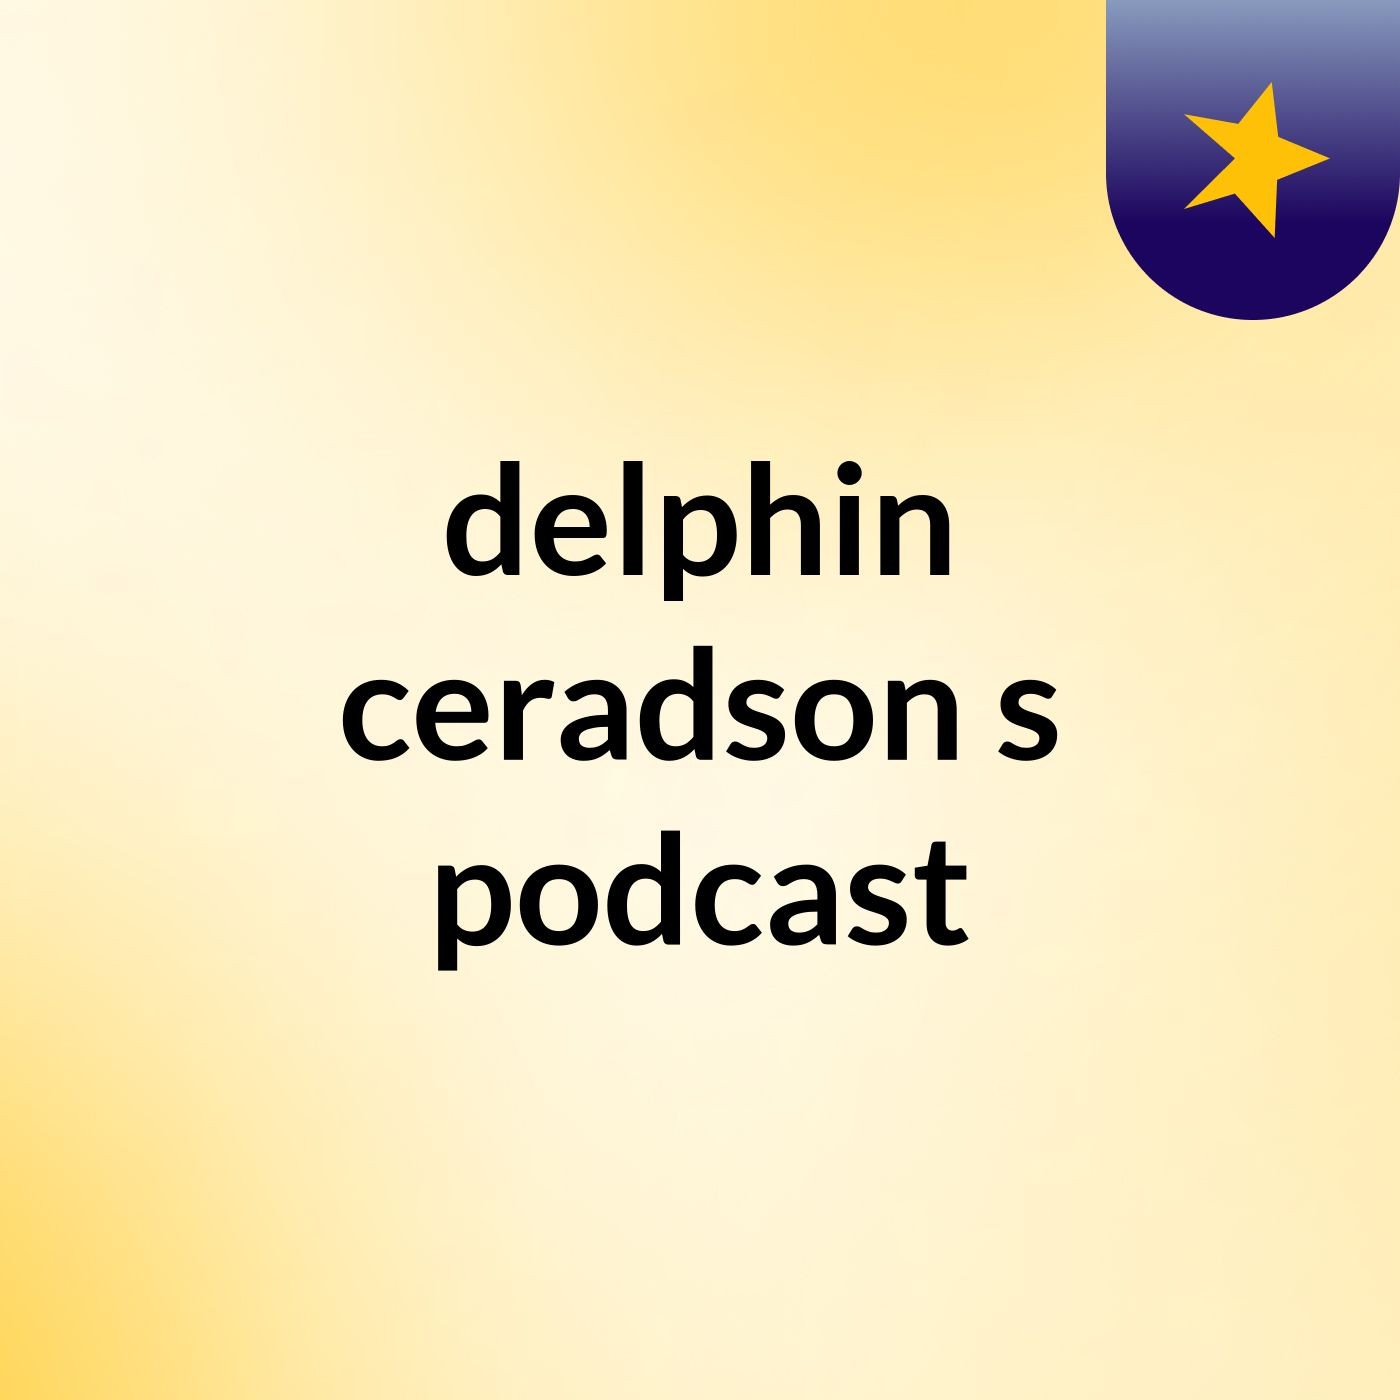 Episode 4 - delphin ceradson's podcast